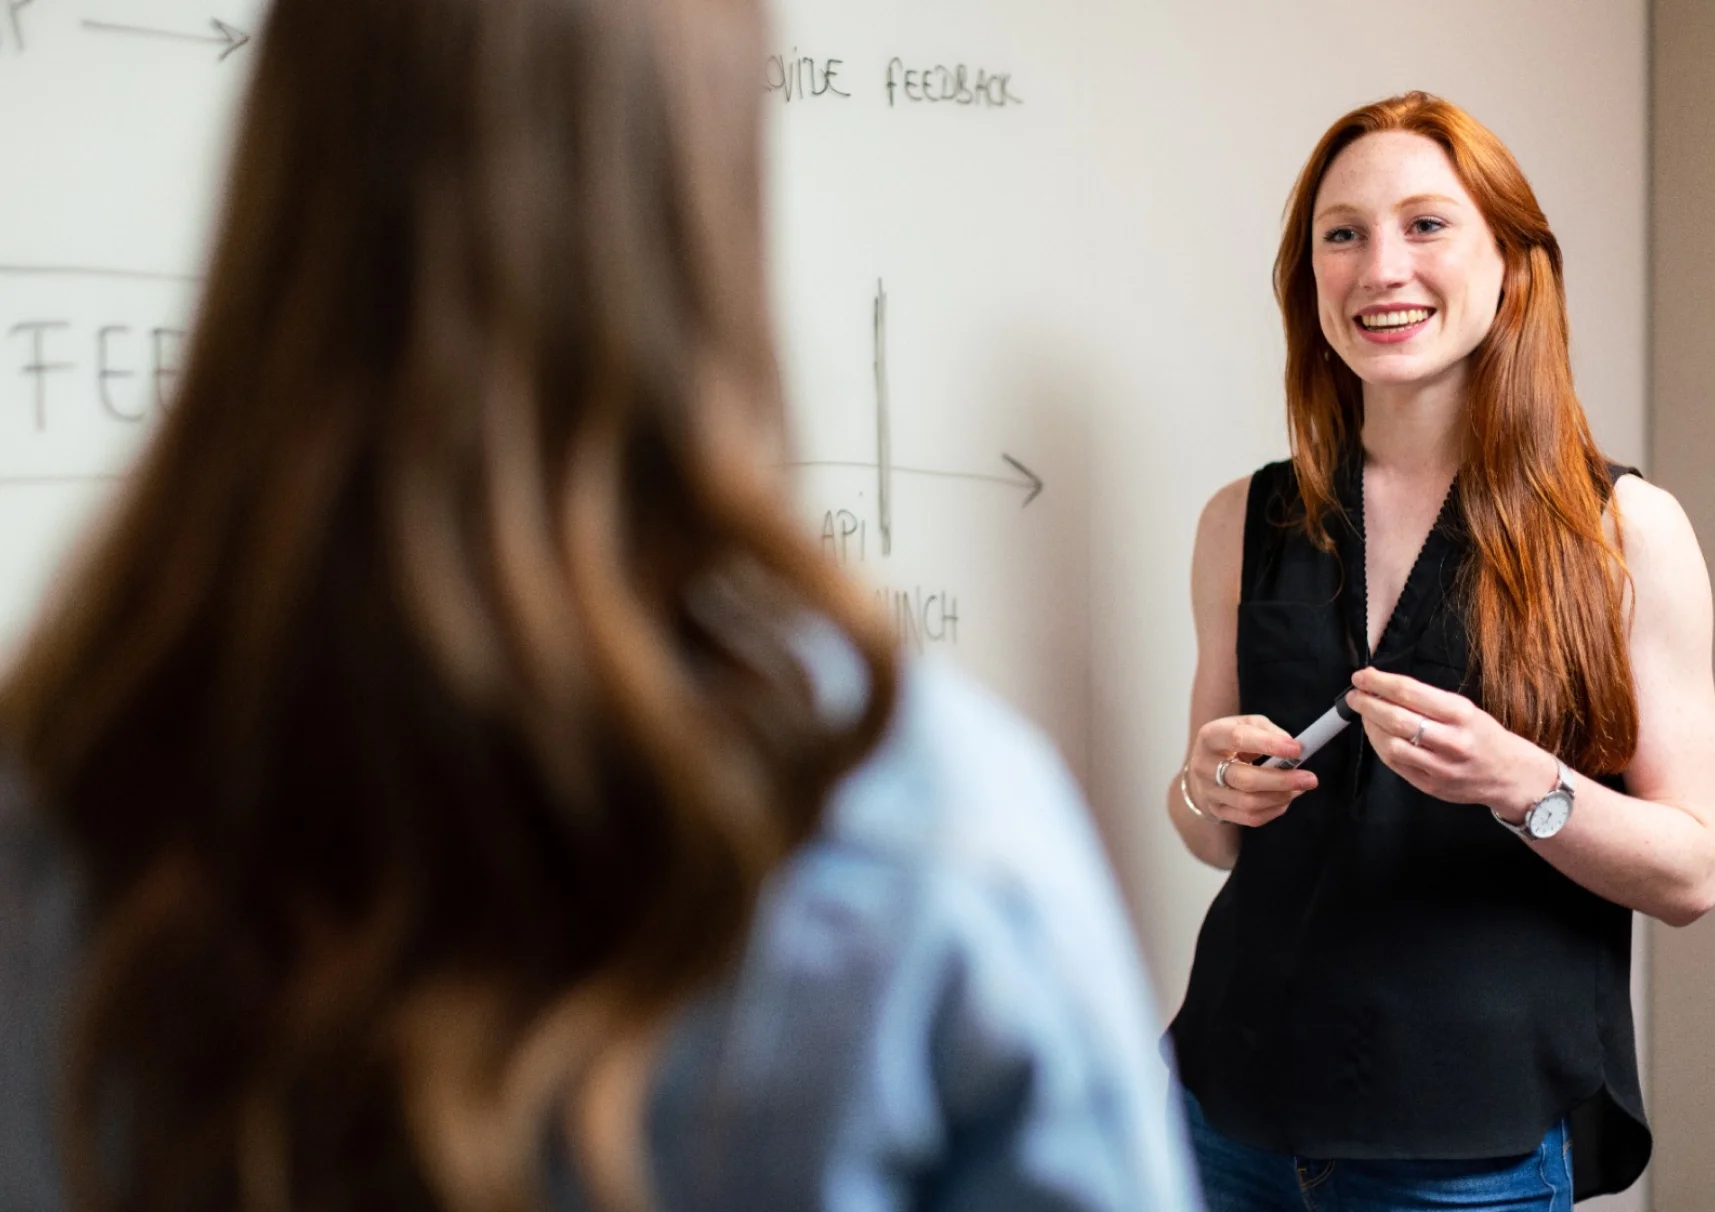 Una profesora pelirroja sonríe a un estudiante parado frente a la pizarra